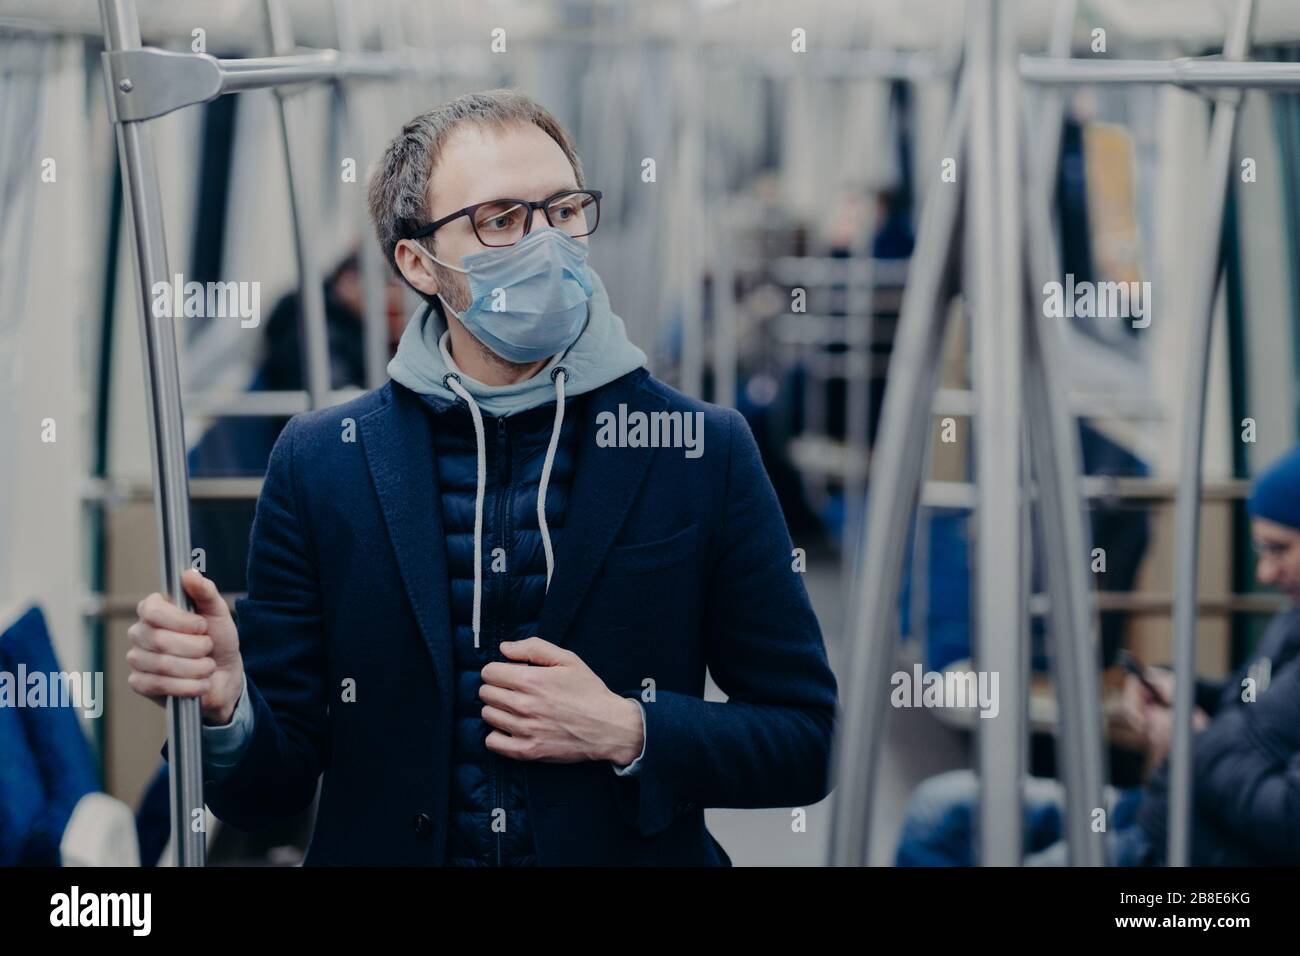 Il giovane uomo pensoso negli occhiali indossa la maschera chirurgica protettiva durante lo scoppio del coronavirus, pone nei mezzi di trasporto pubblici, pensa come superare le malattie Foto Stock